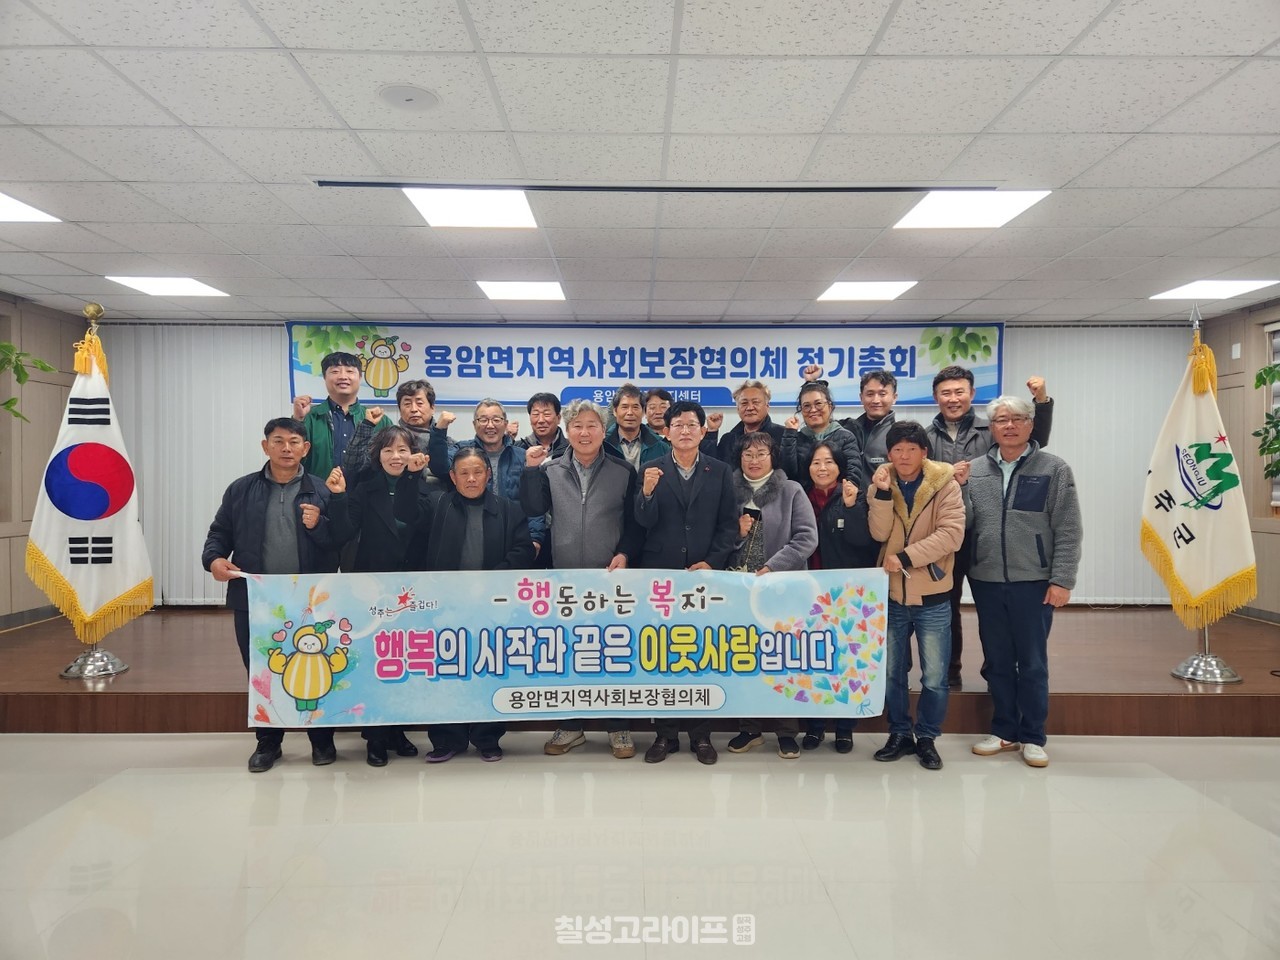 용암면지역사회보장협의체 상반기 정기회의 개최